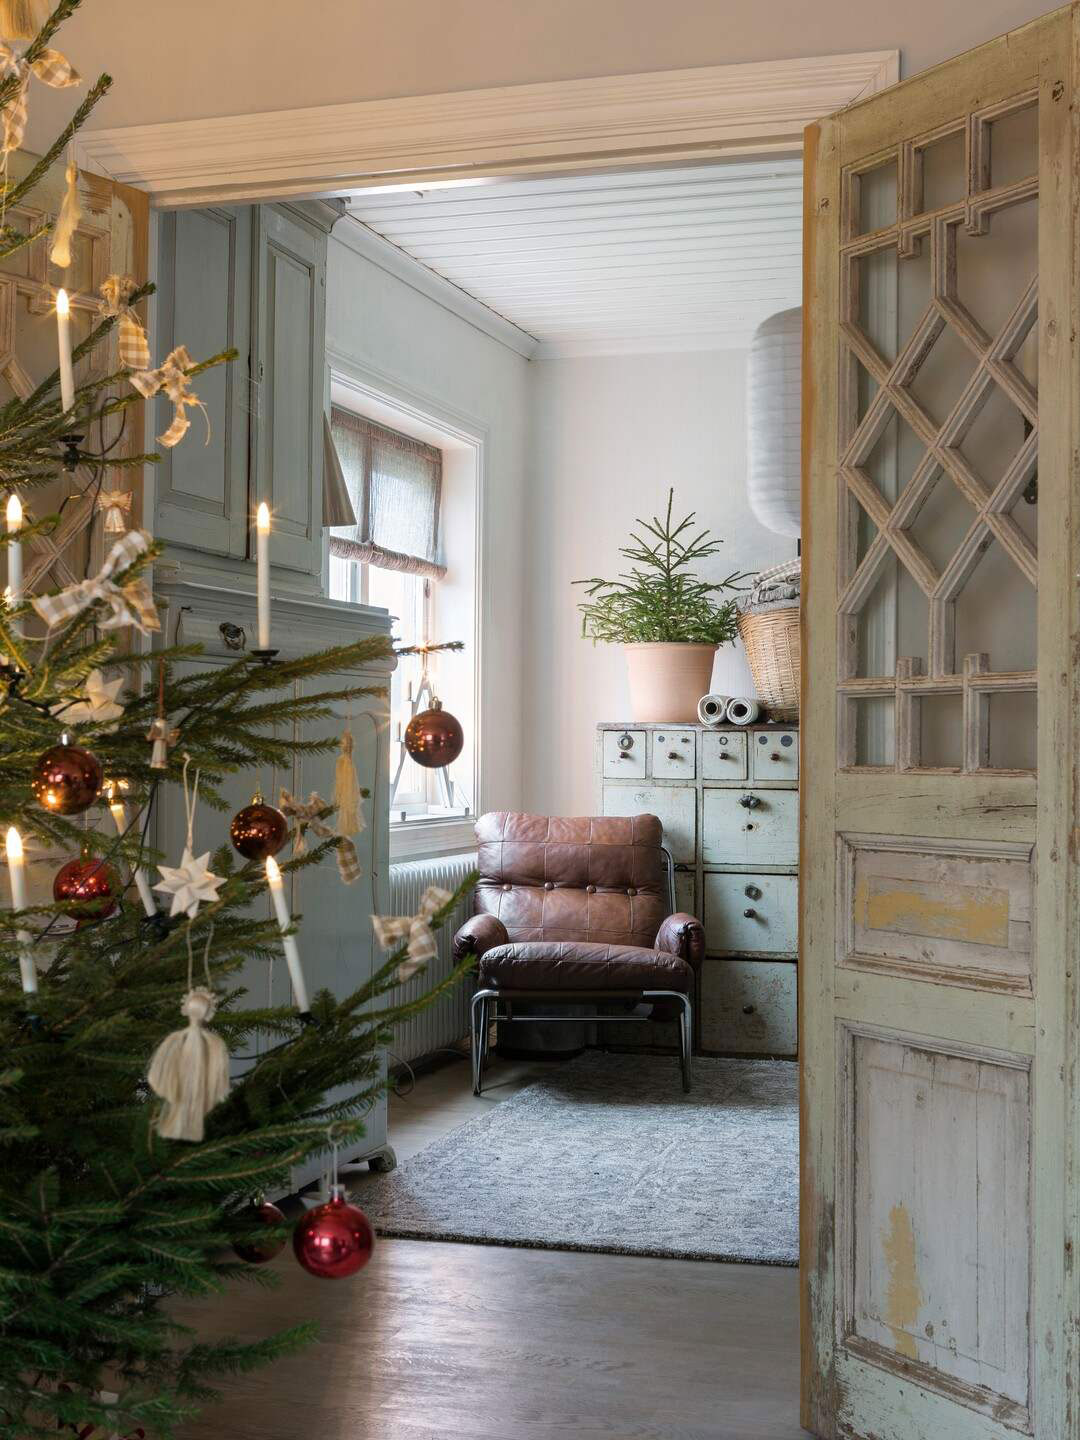 Рождественский декор в стиле рустик для дома 1940-х годов в Швеции